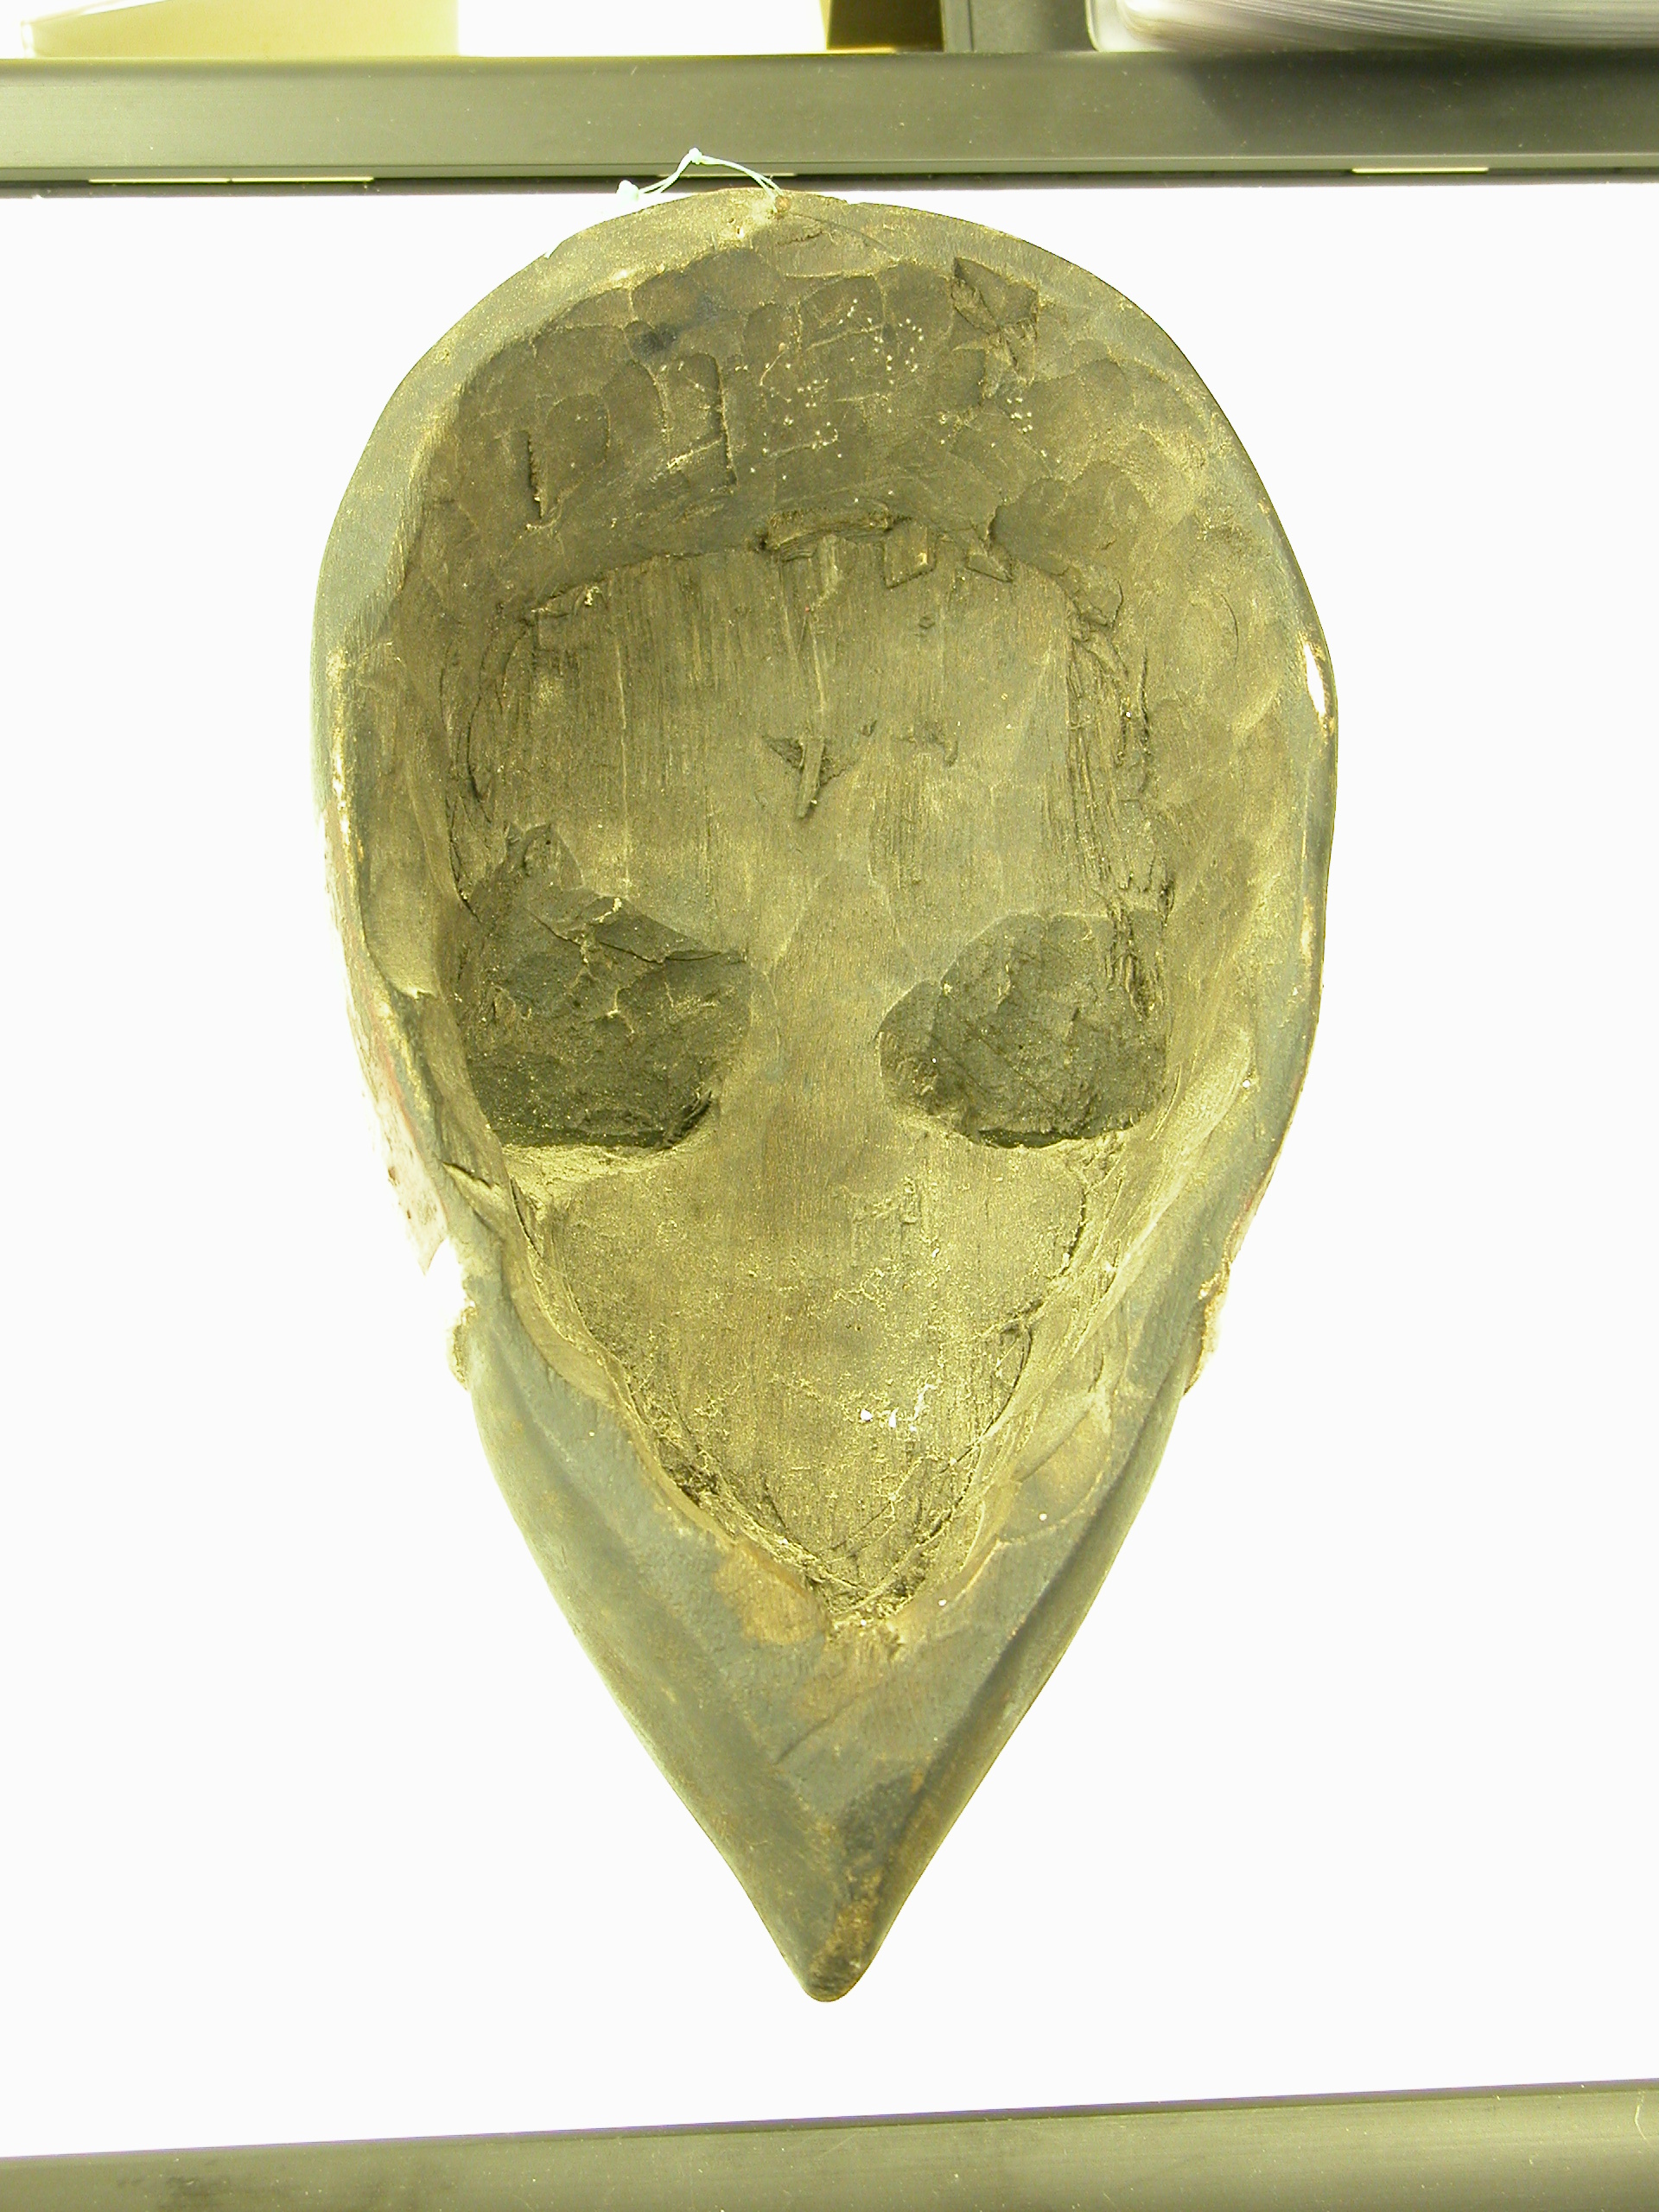 objects art sculpture alien mask gold golden